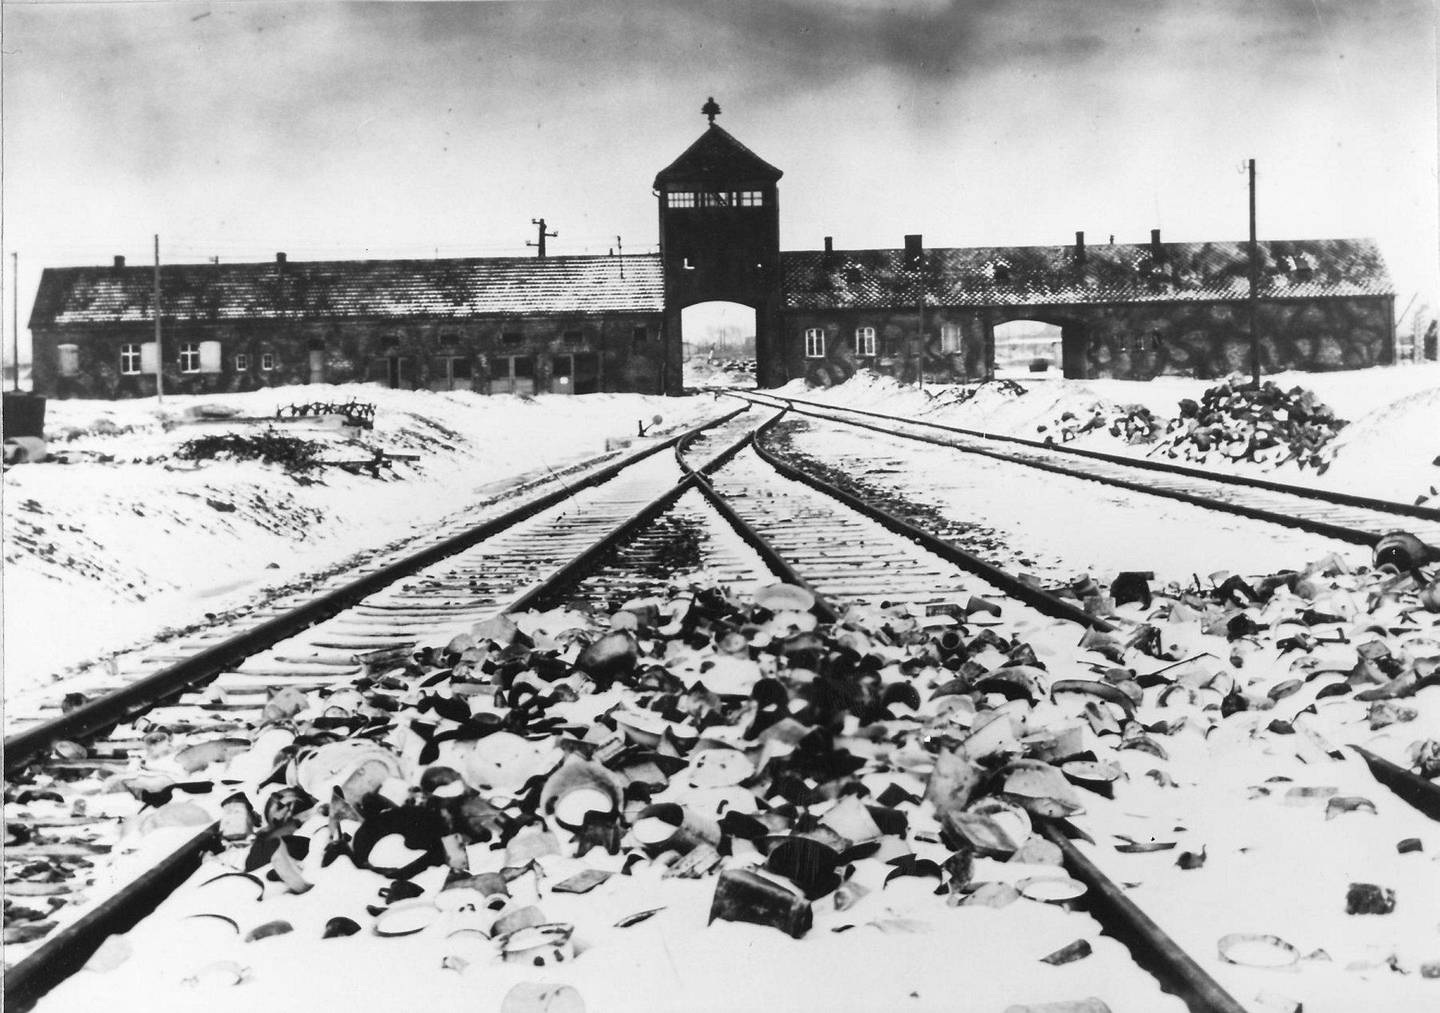 Inngangen til Auschwitz fotografert i mars/april 1945. I forgrunnen, på skinnene, sees personlige gjenstander forlatt av de utallige menneskene som ankom utryddelsesleiren. Foto: AP/NTB scanpix